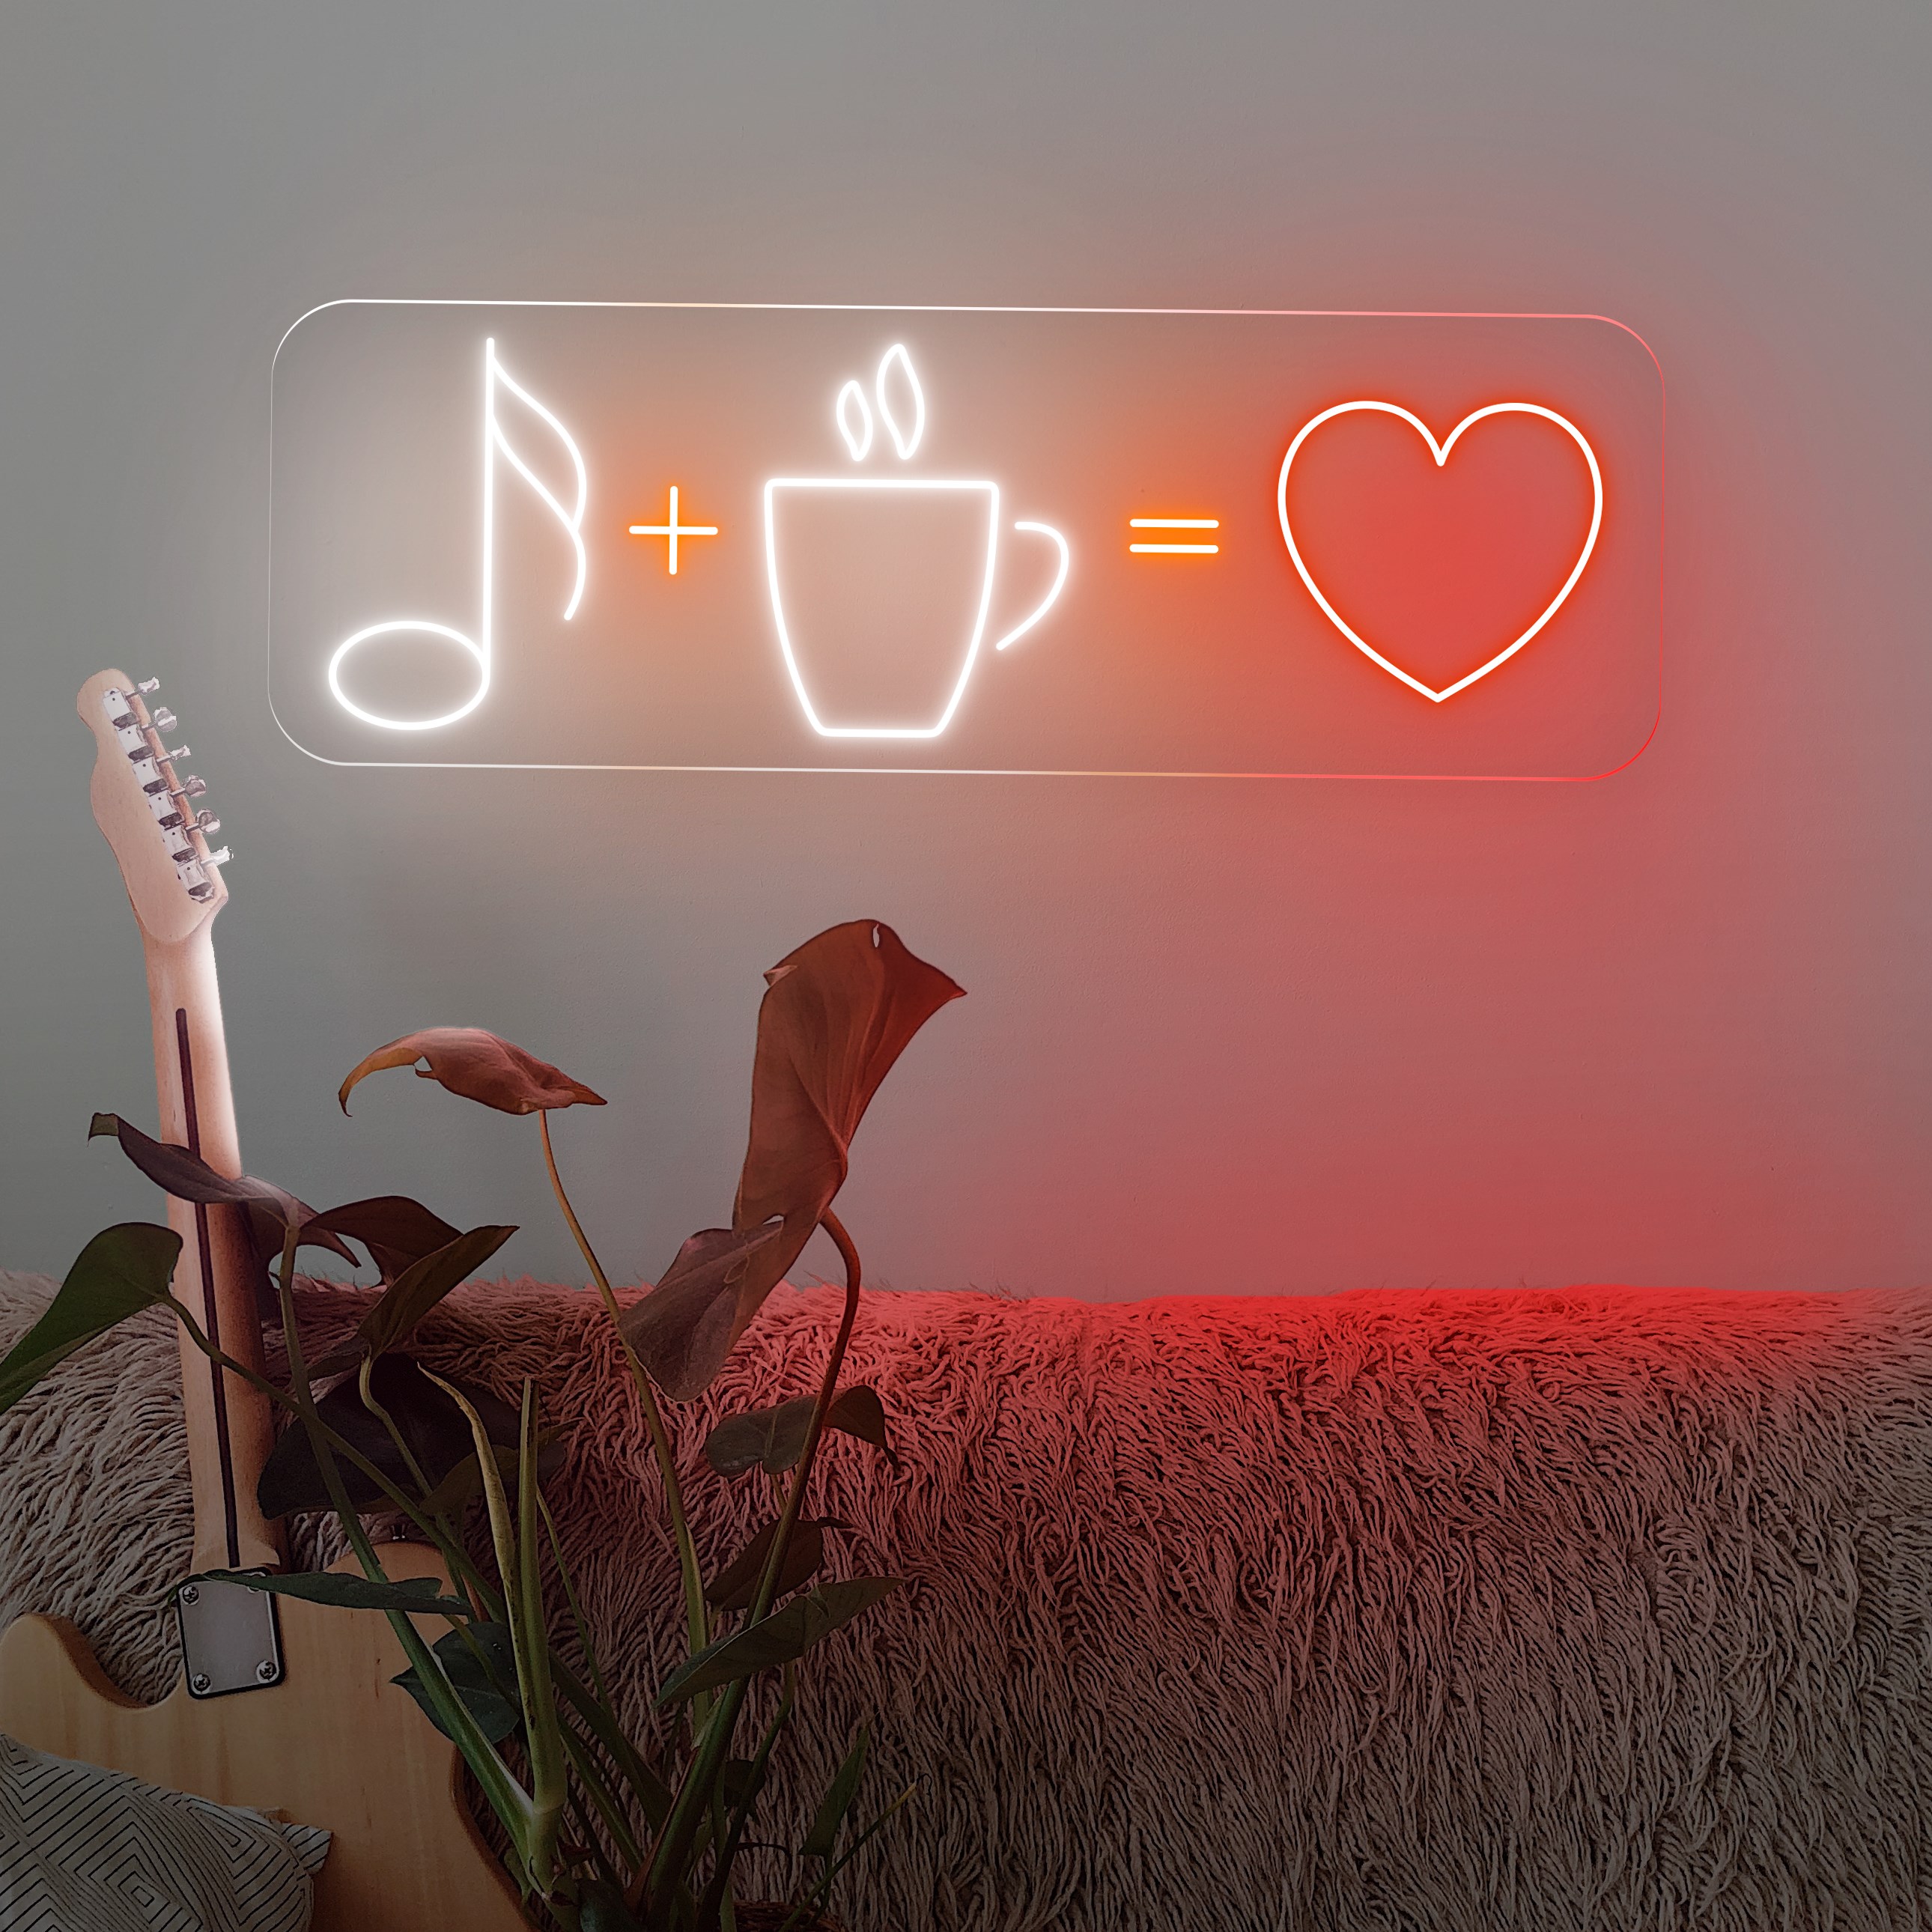 Immagine di Neon "Coffee + Music = Love"